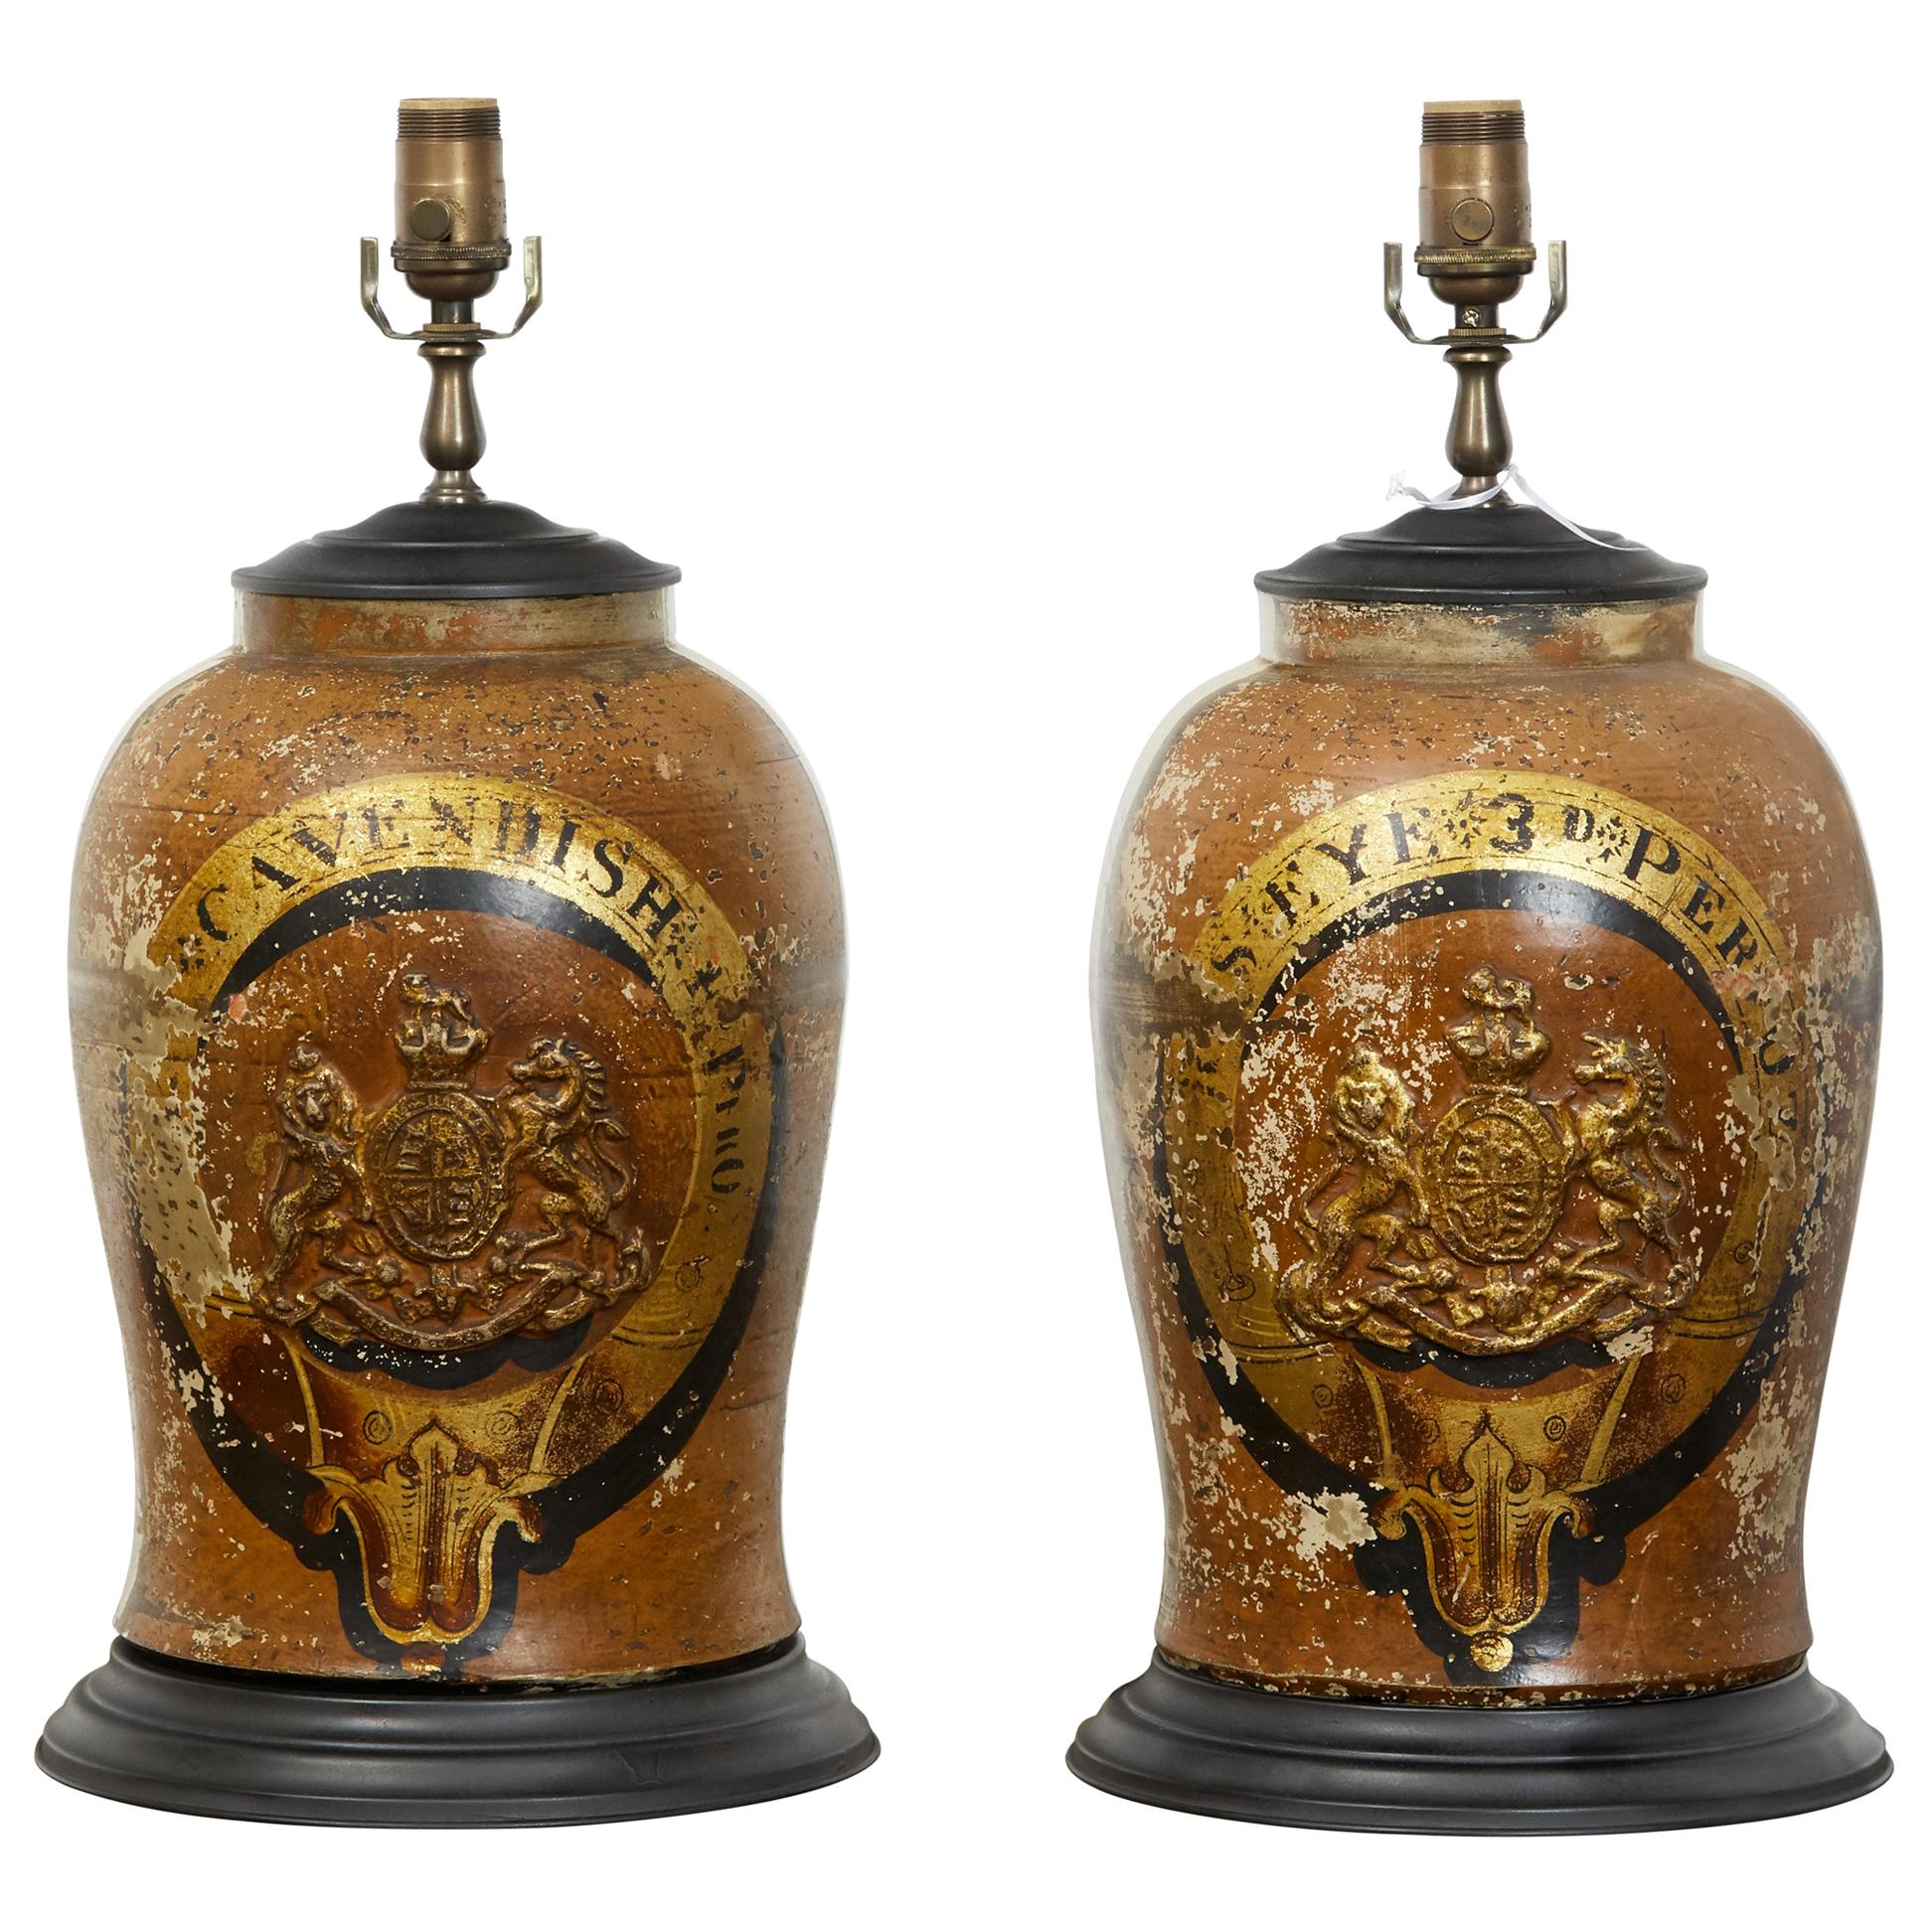 Paire de lampes de bureau en grès anglais des années 1880 avec armoiries transformées en lampes de table câblées